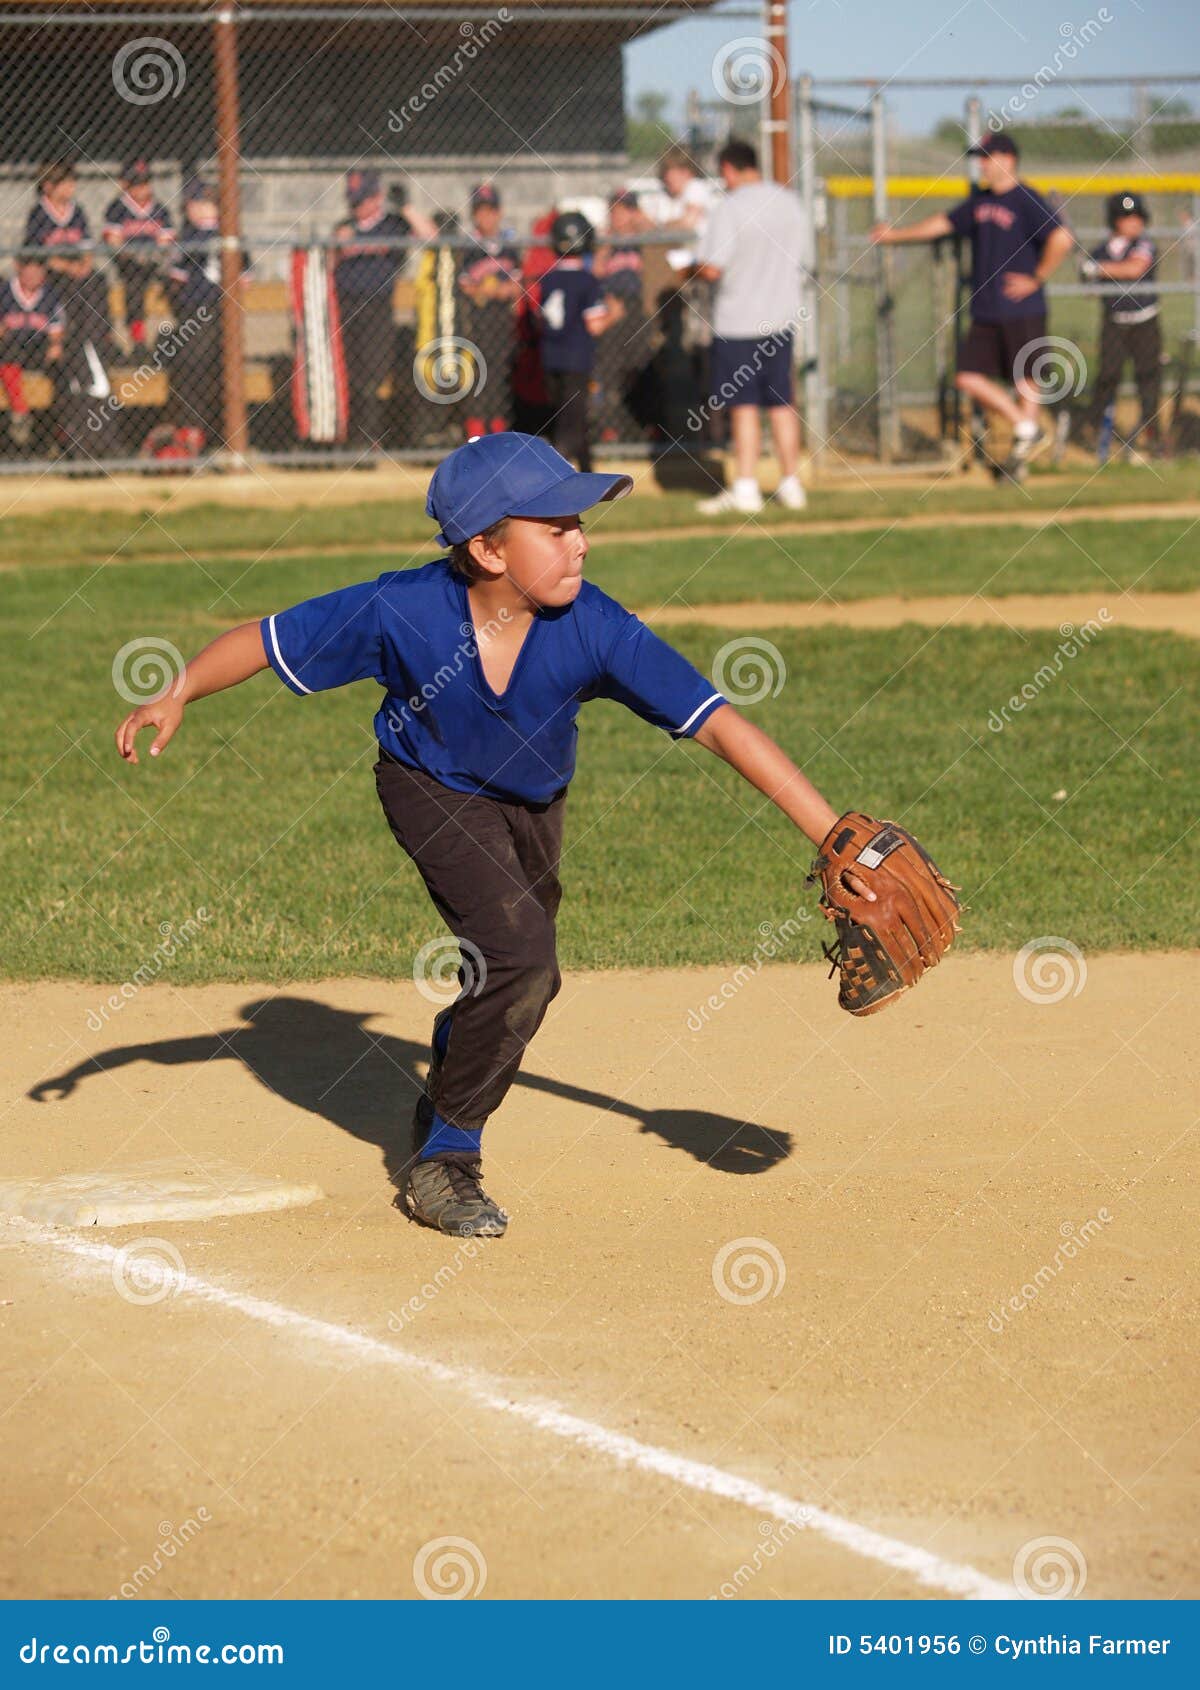 little league baseball first baseman